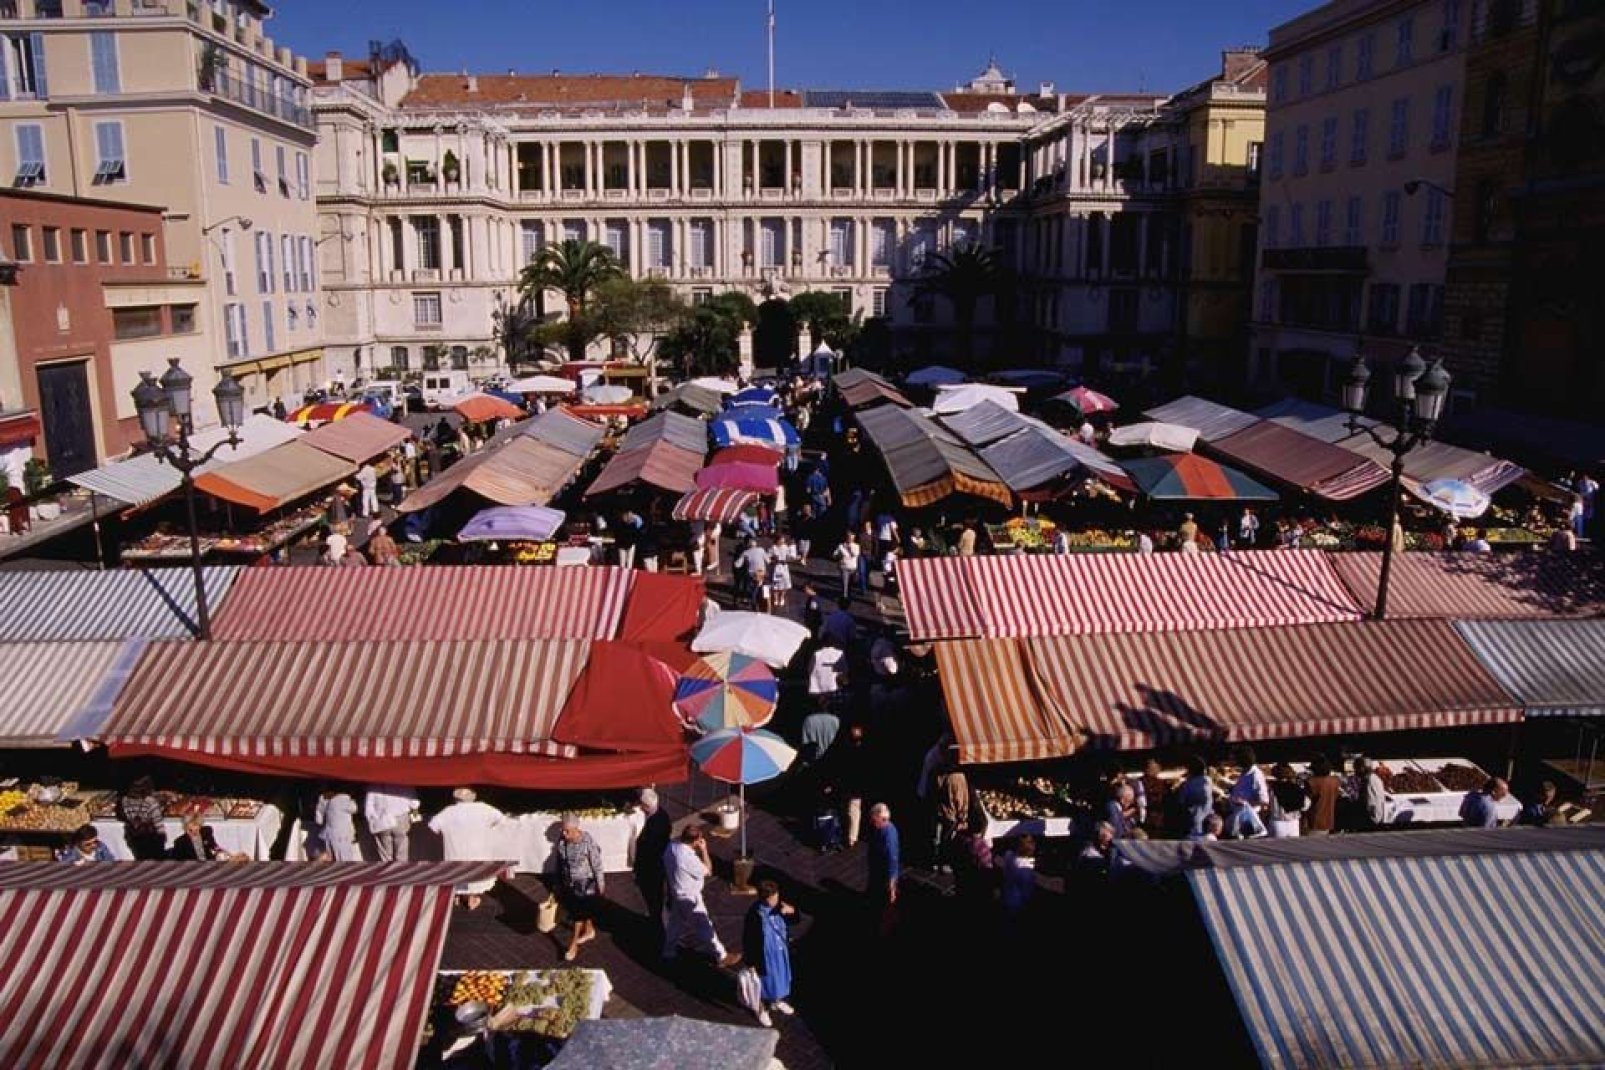 Die Märkte von Nizza sind beliebte Treff- sowie Handelsplätze und haben eine lange Tradition, vor allem aufgrund der hohen Qualität der frischen Produkte.